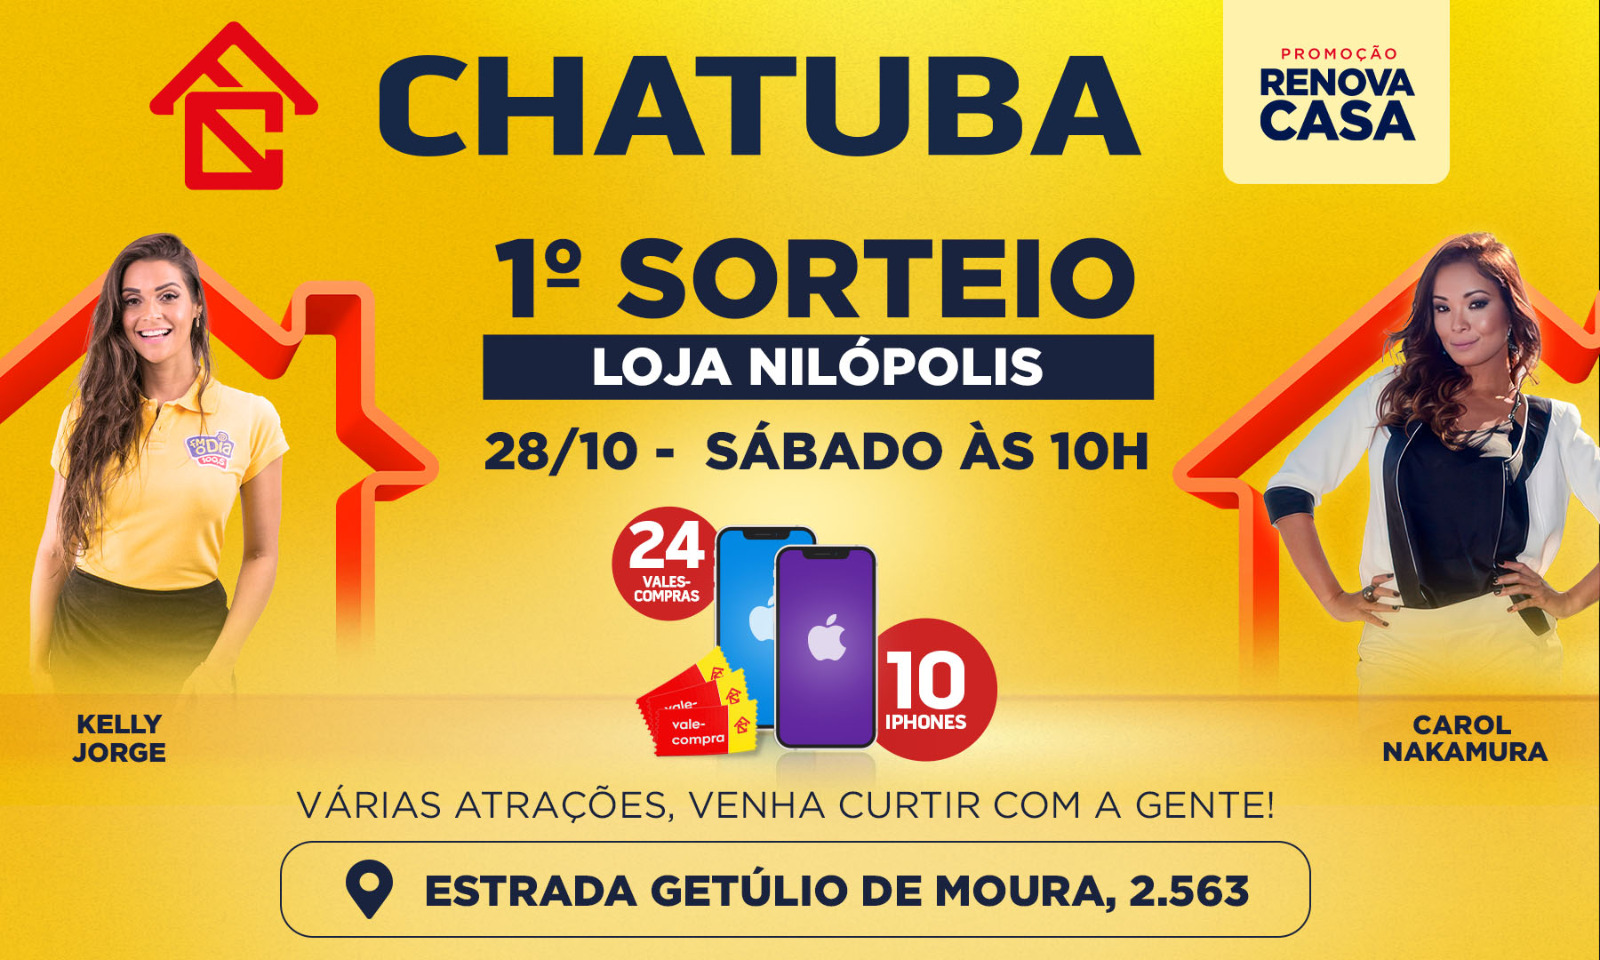 Primeiro sorteio da Campanha da Chatuba vai premiar clientes com iPhones e vales-compra neste sábado